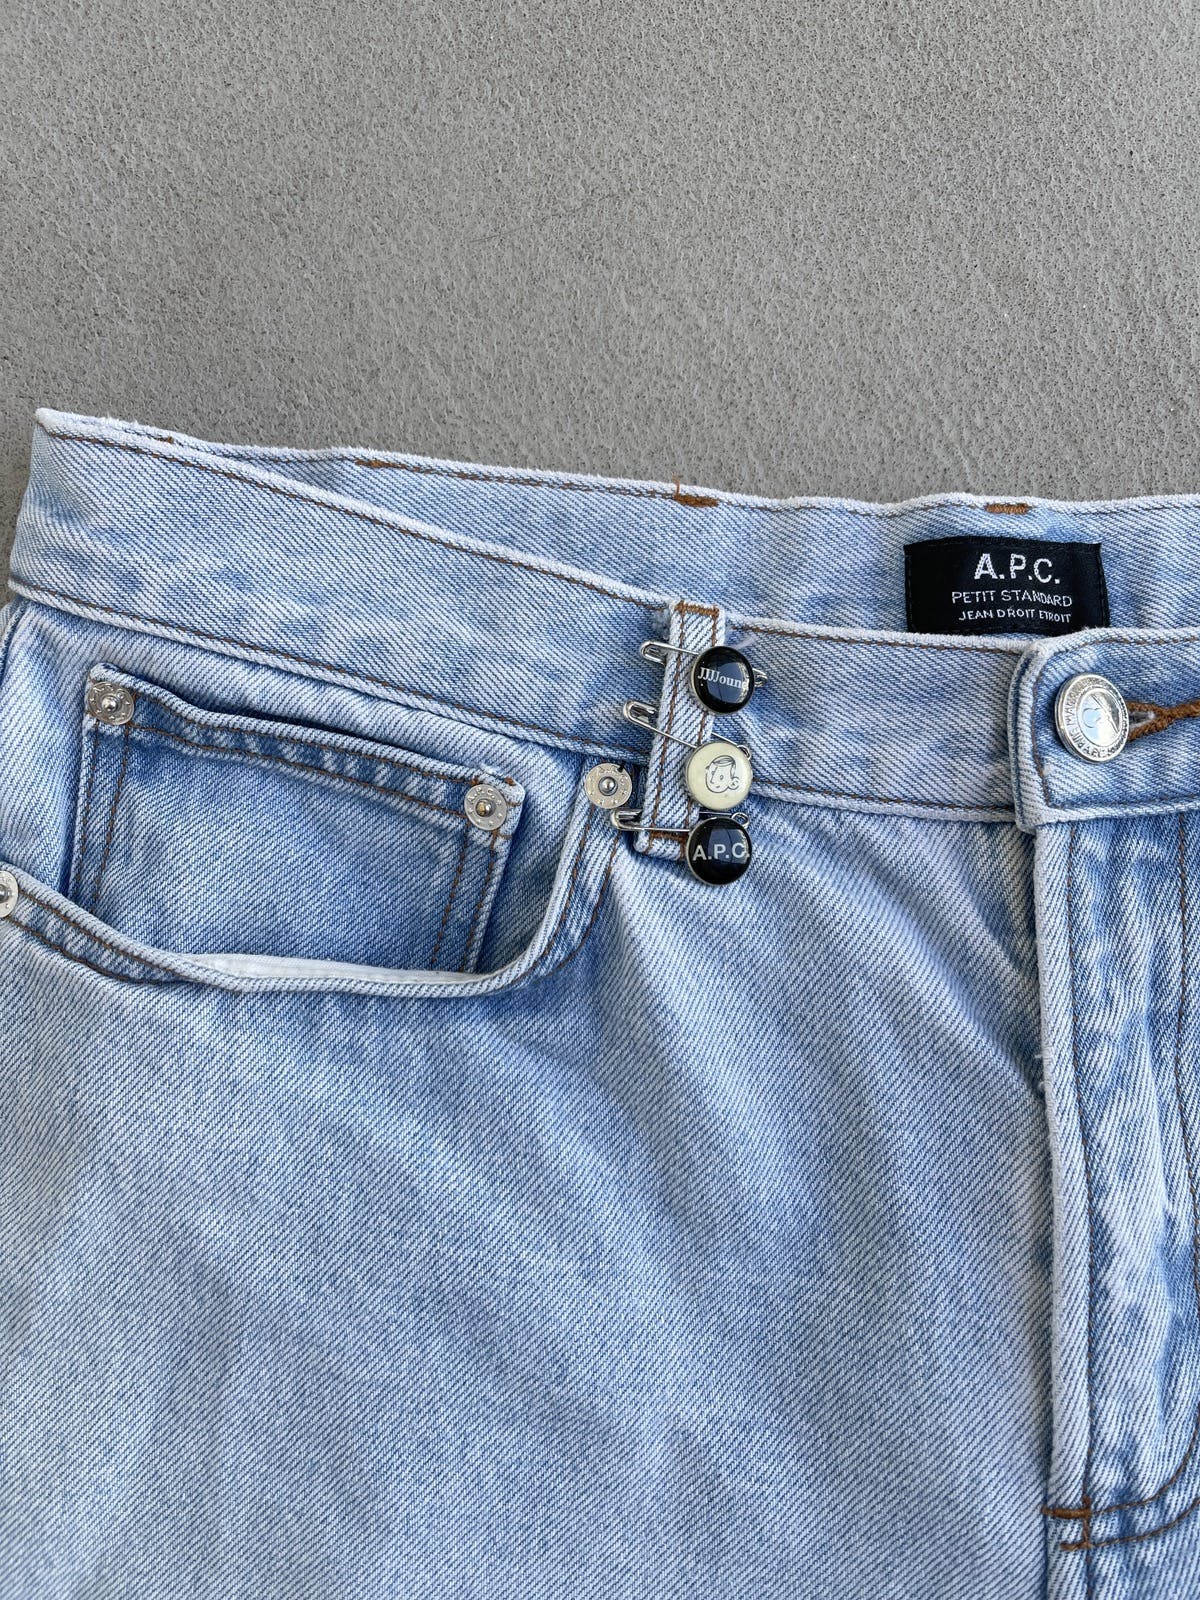 A.P.C. x Jjjjound Petit Standard Flare Denim Jeans - 5